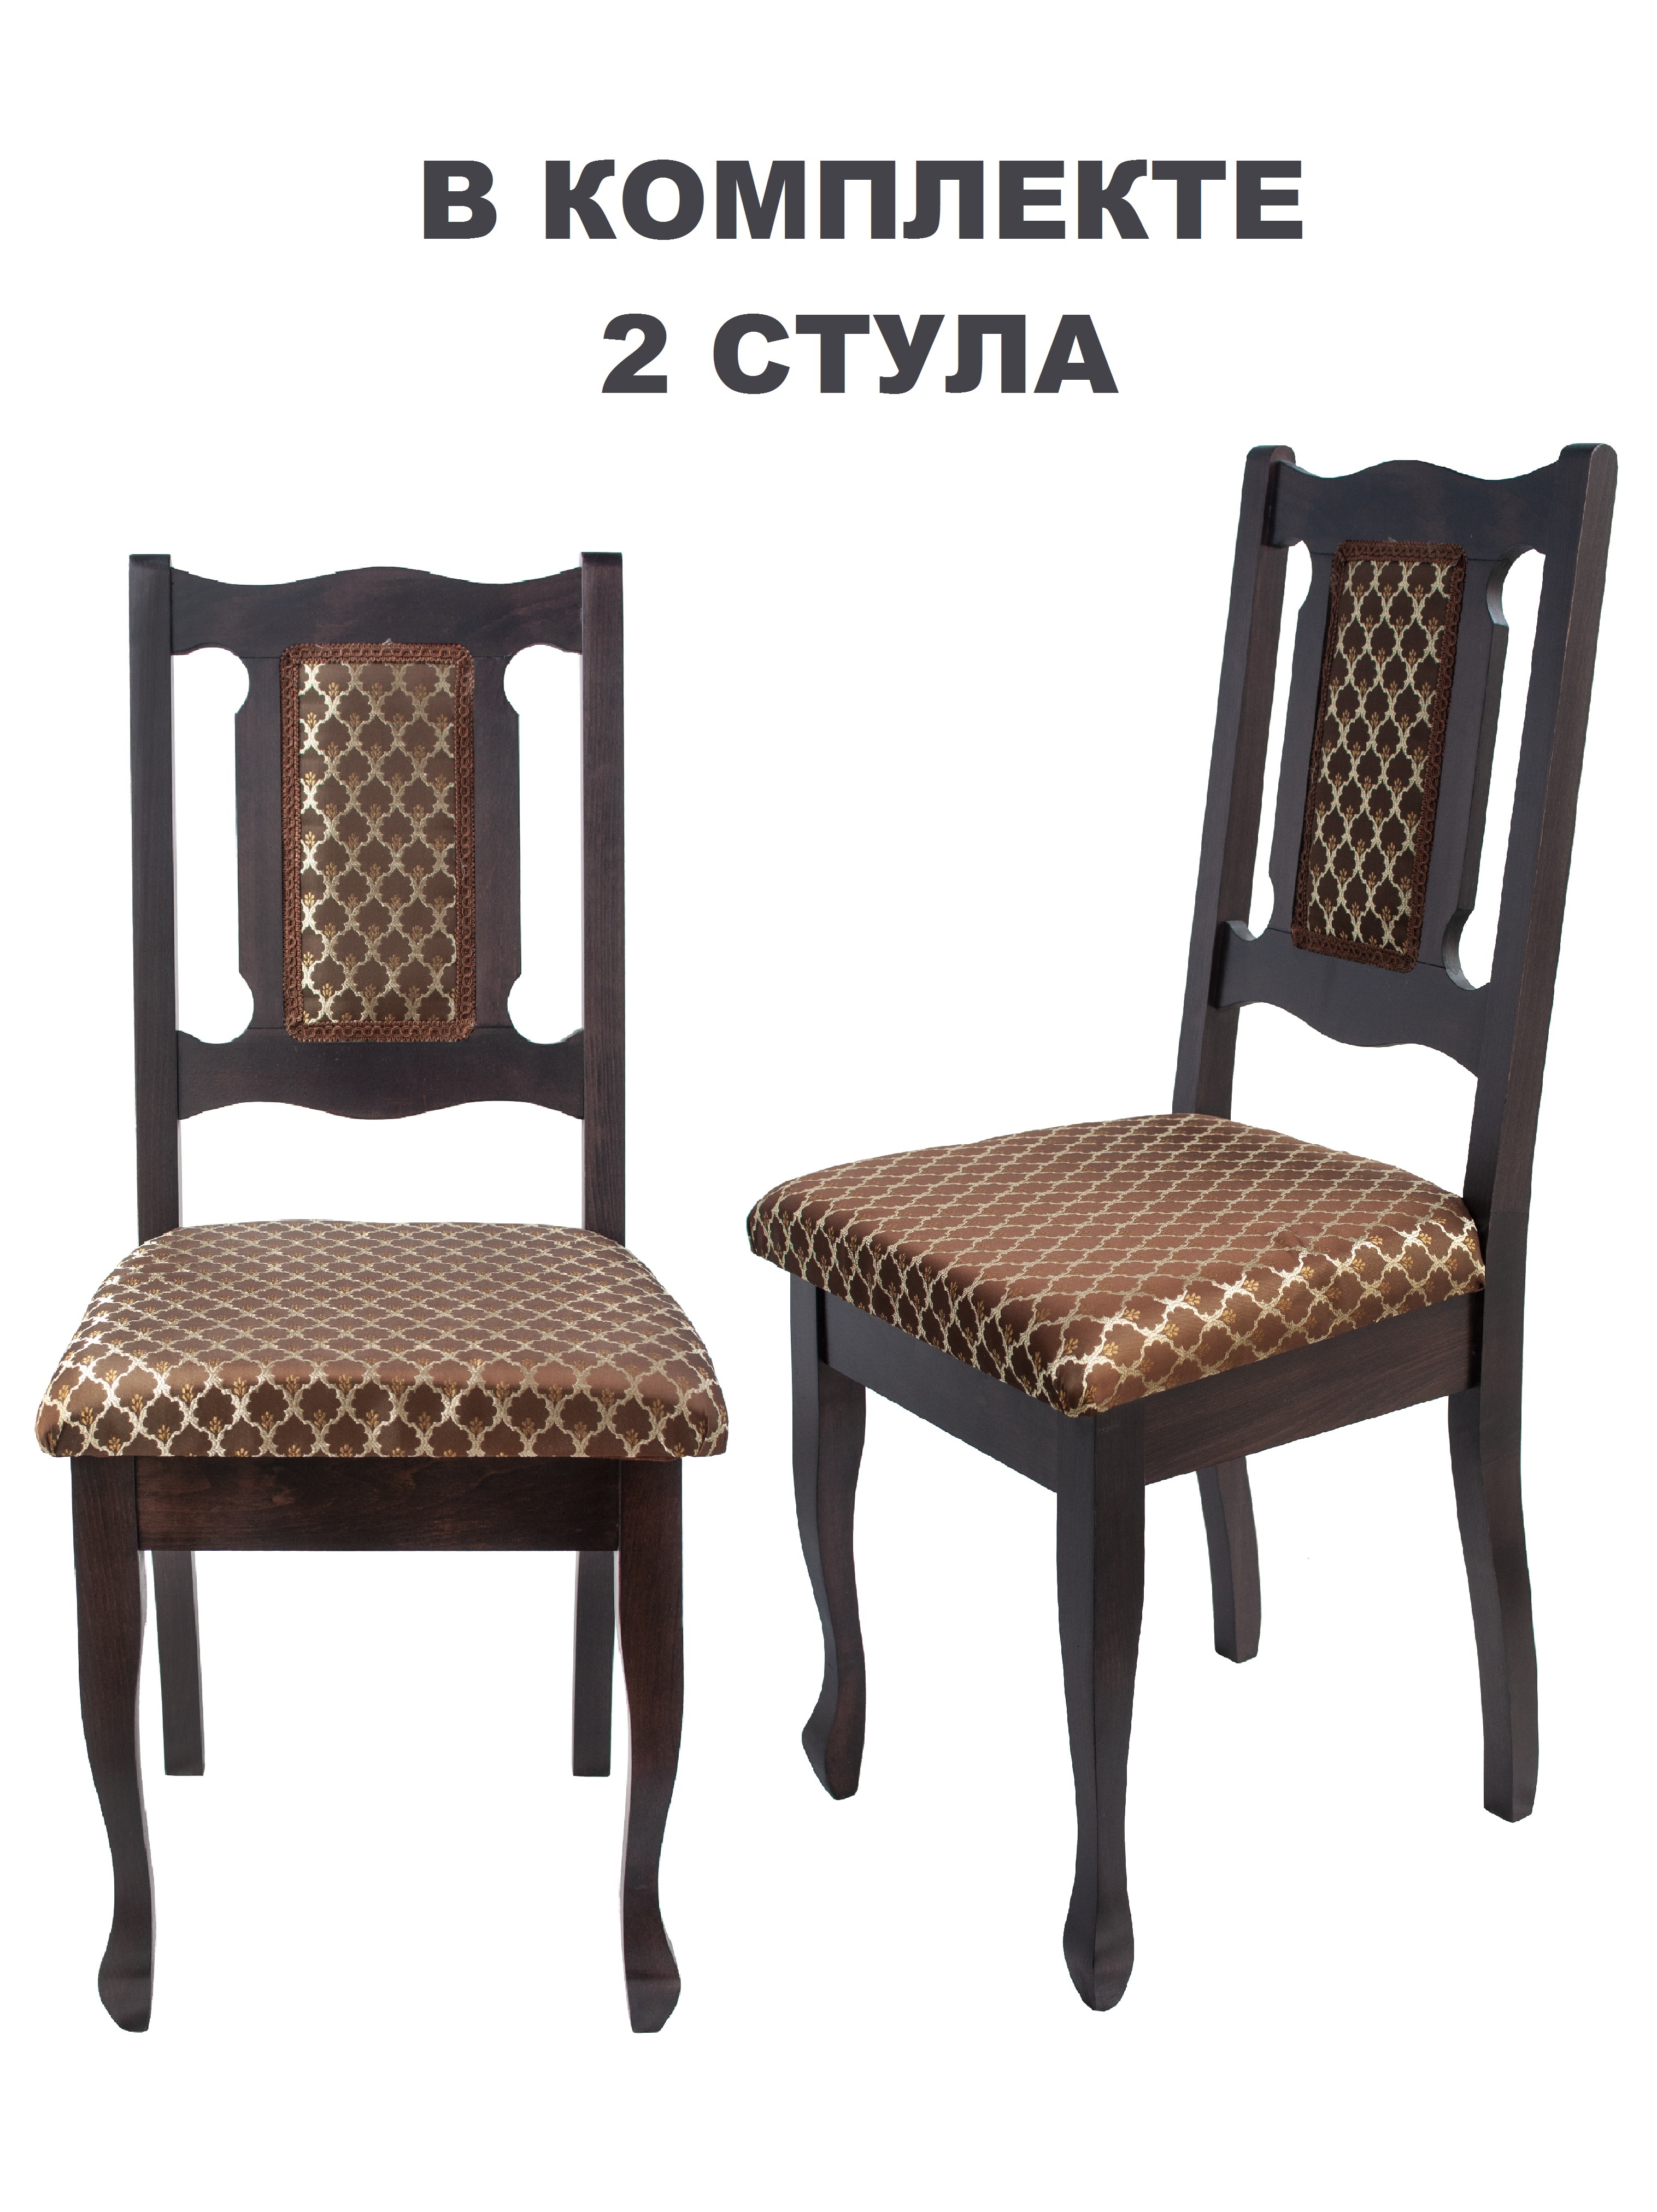 Материал и конструкция складных деревянных стульев для бани